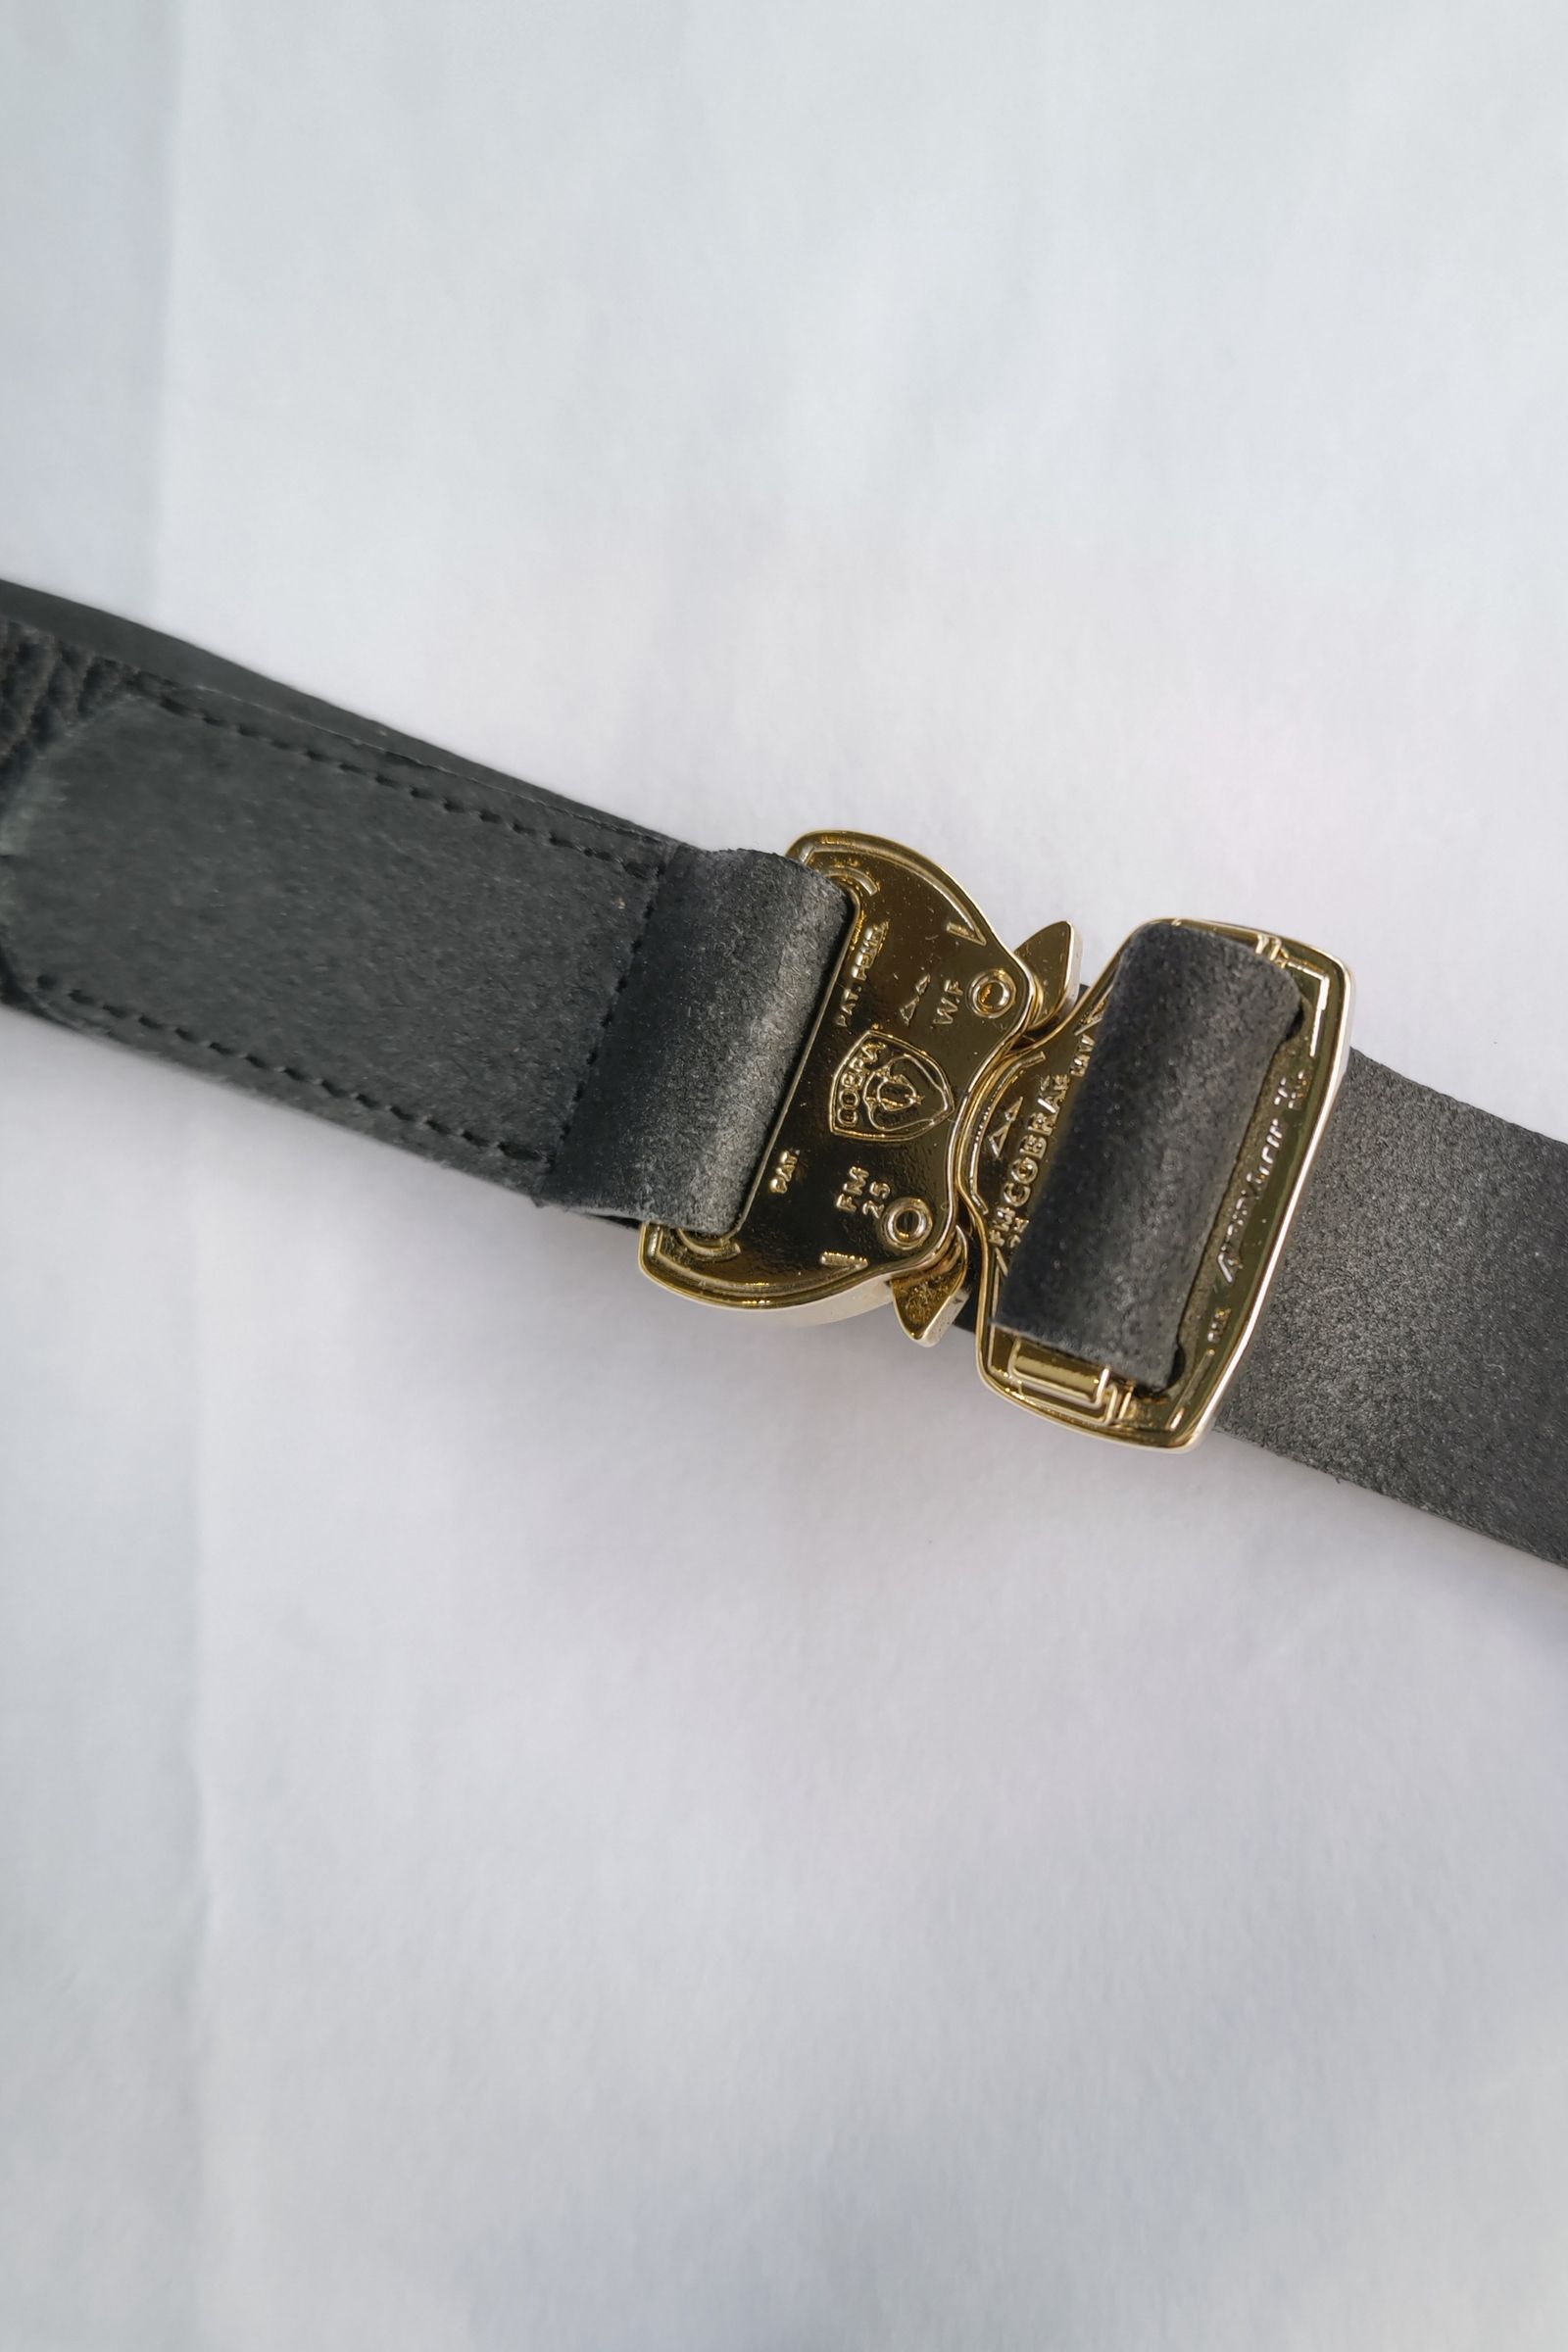 UNUSED - Cobra buckle belt -black- 23ss | asterisk